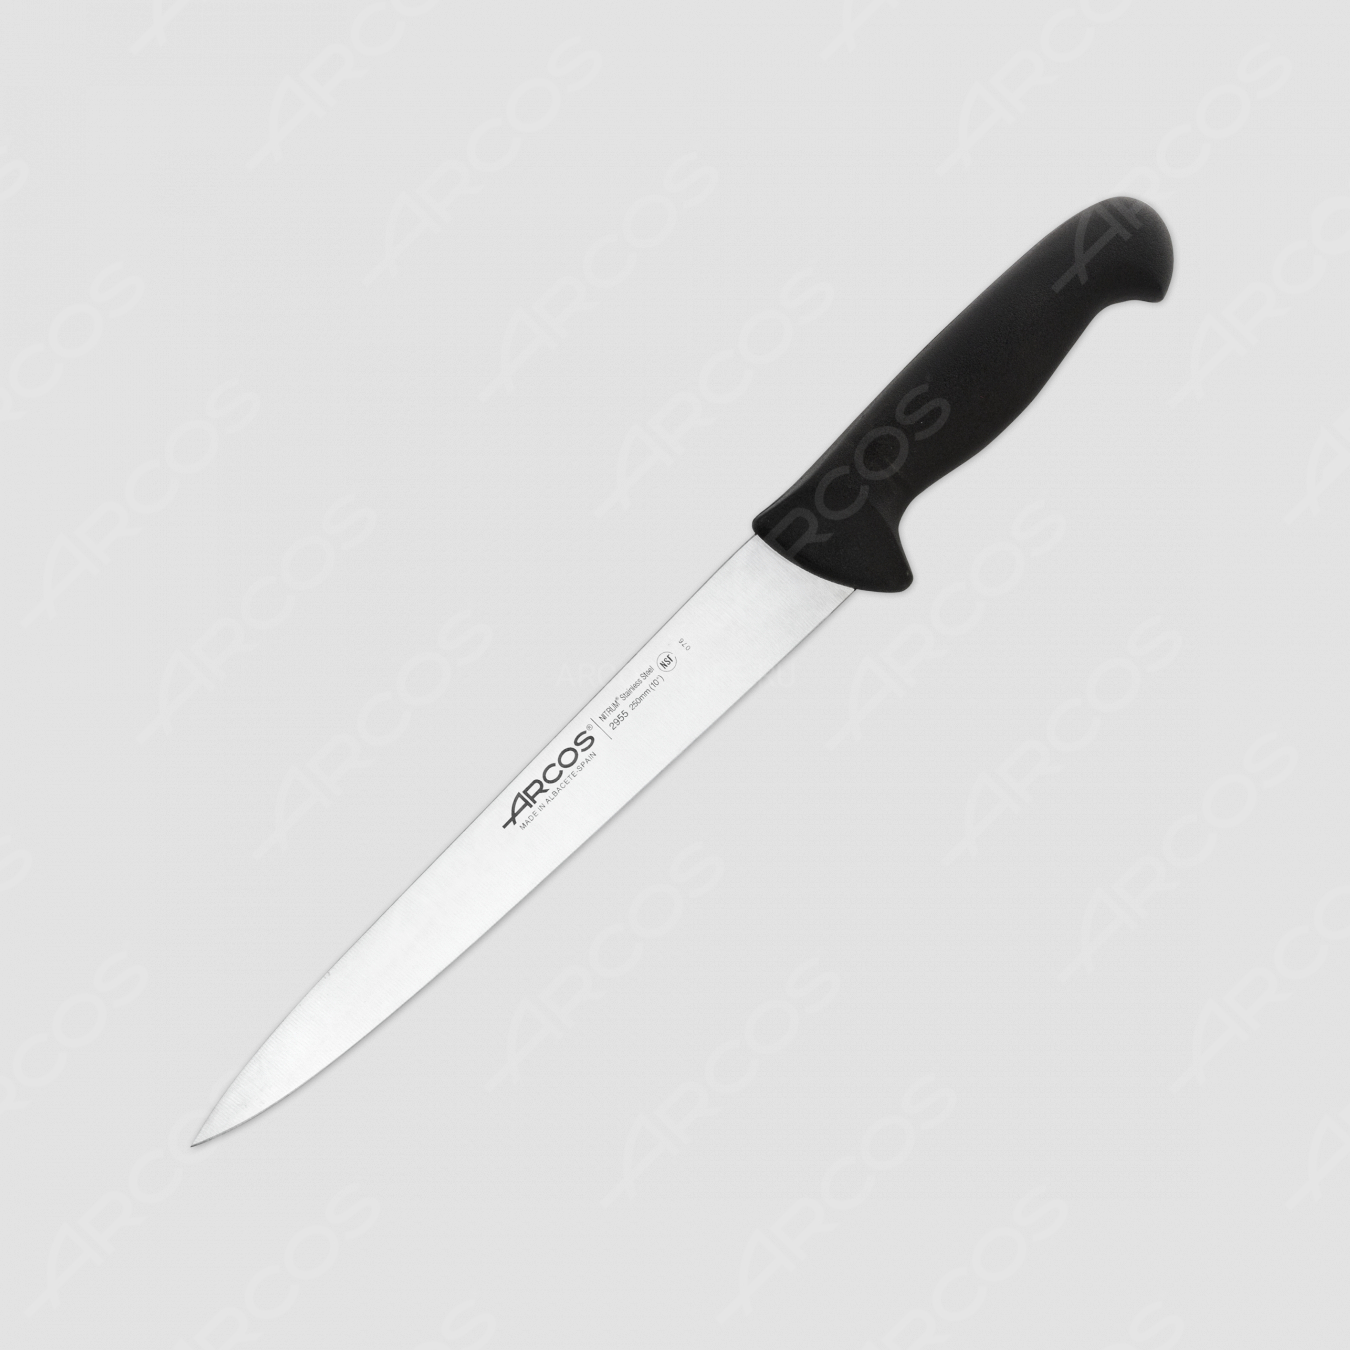 Нож кухонный для разделки 25 см, рукоять - черная, серия 2900, ARCOS, Испания